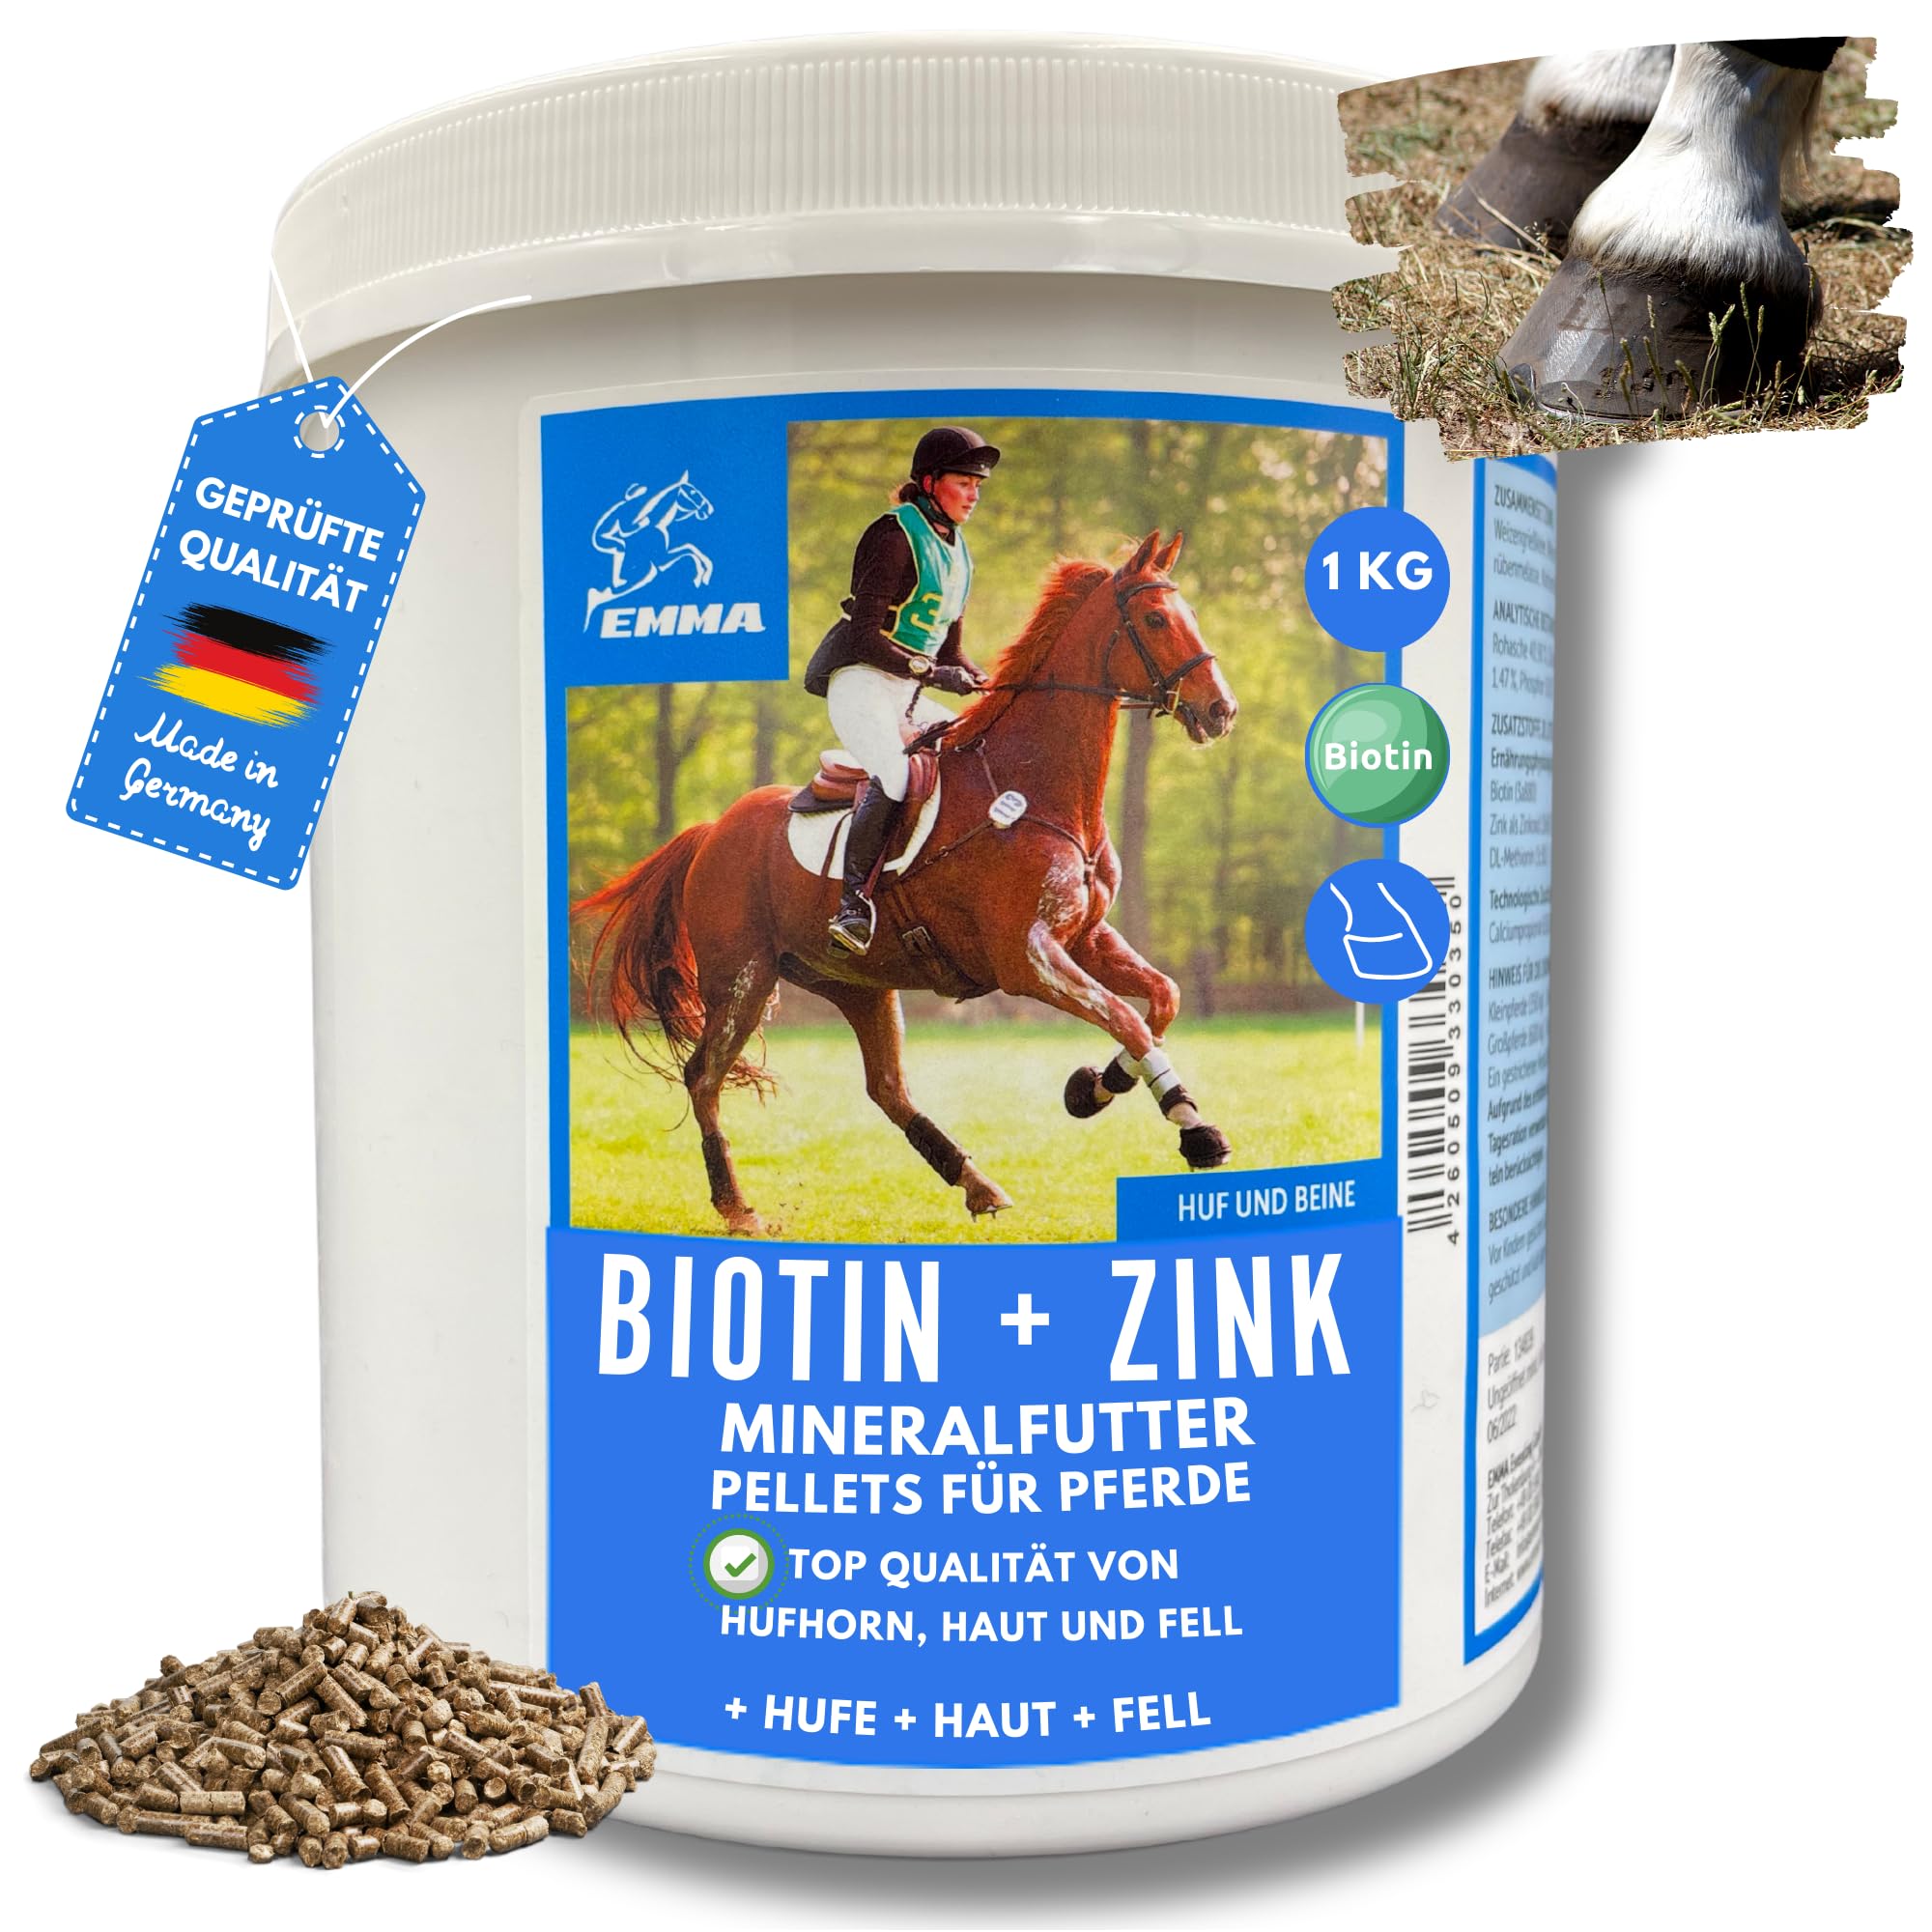 Zink Pferd + Biotin Pferd - Biotin und Zink für Pferde - Zusatzfutter Hufe, Haut & Haare bei Ekzem Mauke - Zink Pferde hochdosiert - Biotin Pellets einfach ins Pferdefutter - Mineralfutter Pferde 1Kg